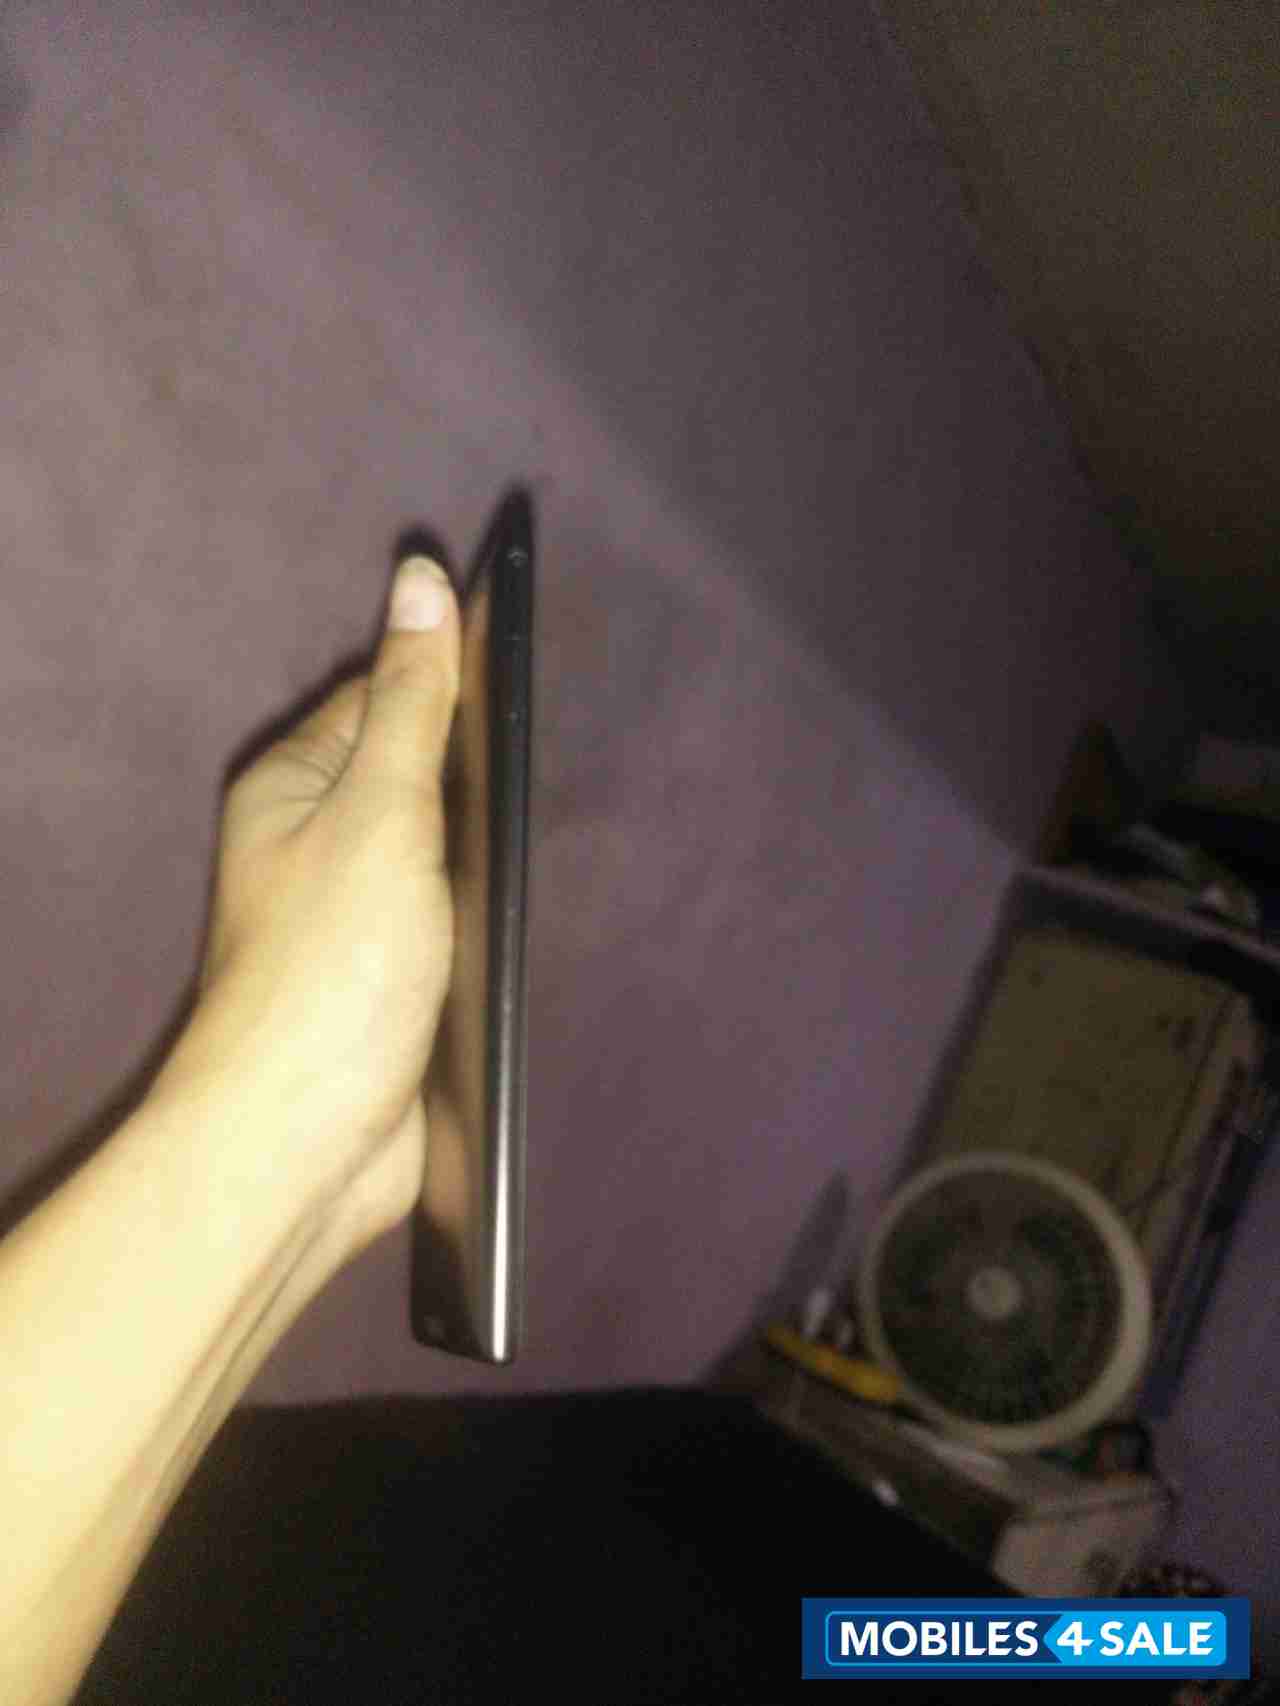 Black Nokia Lumia 1520